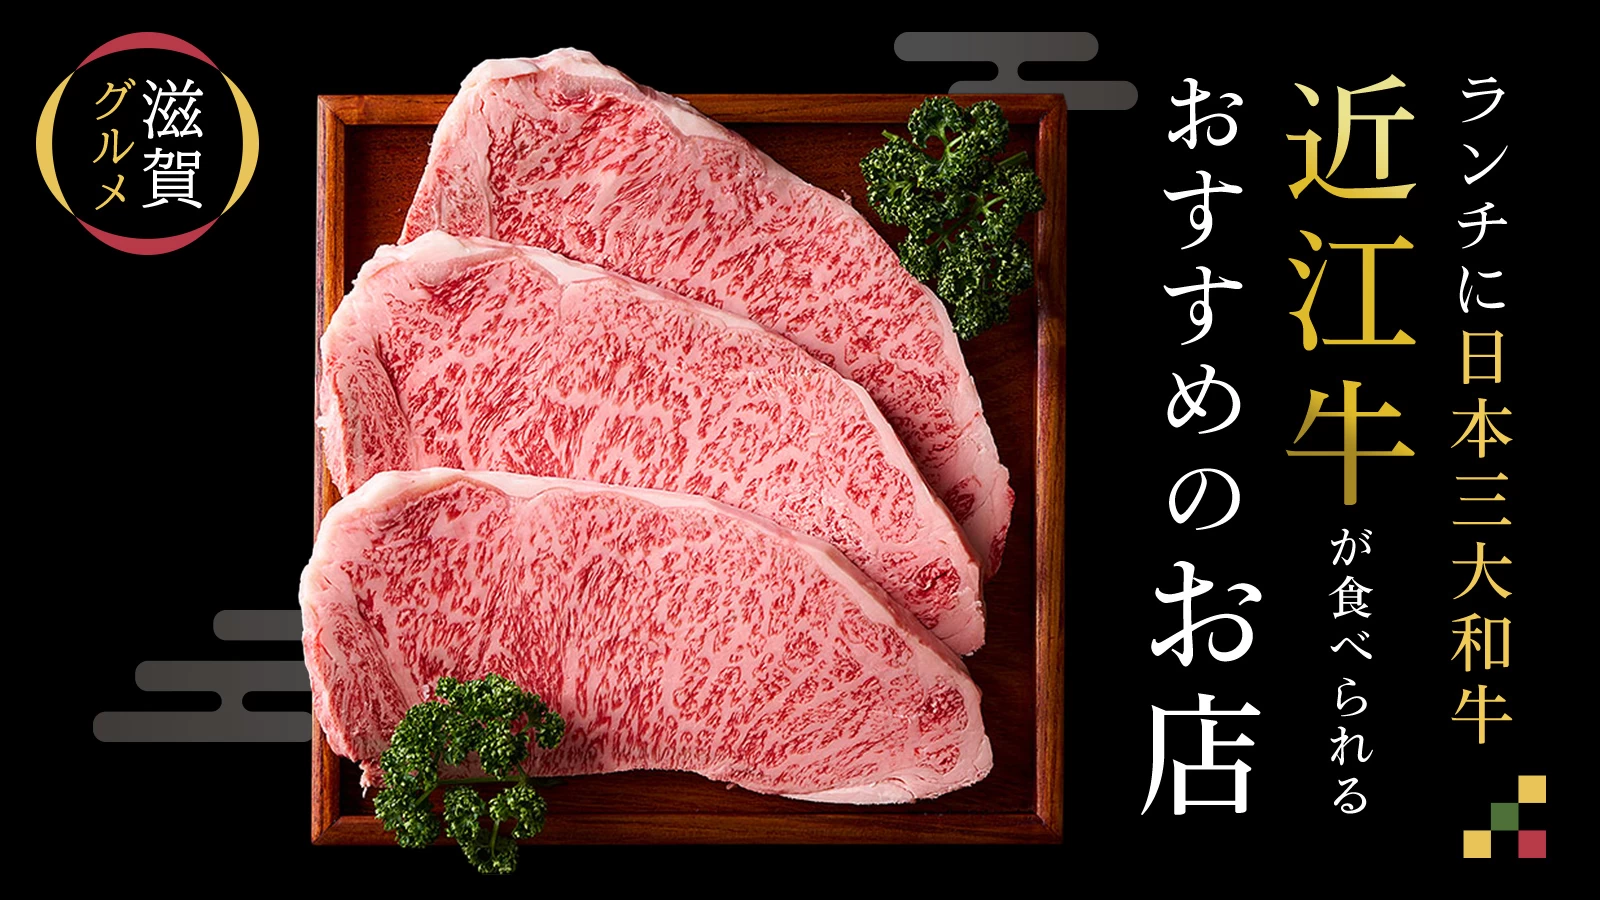 【滋賀グルメ】ランチに日本三大和牛&quot;近江牛&quot;が食べられるおすすめのお店6選